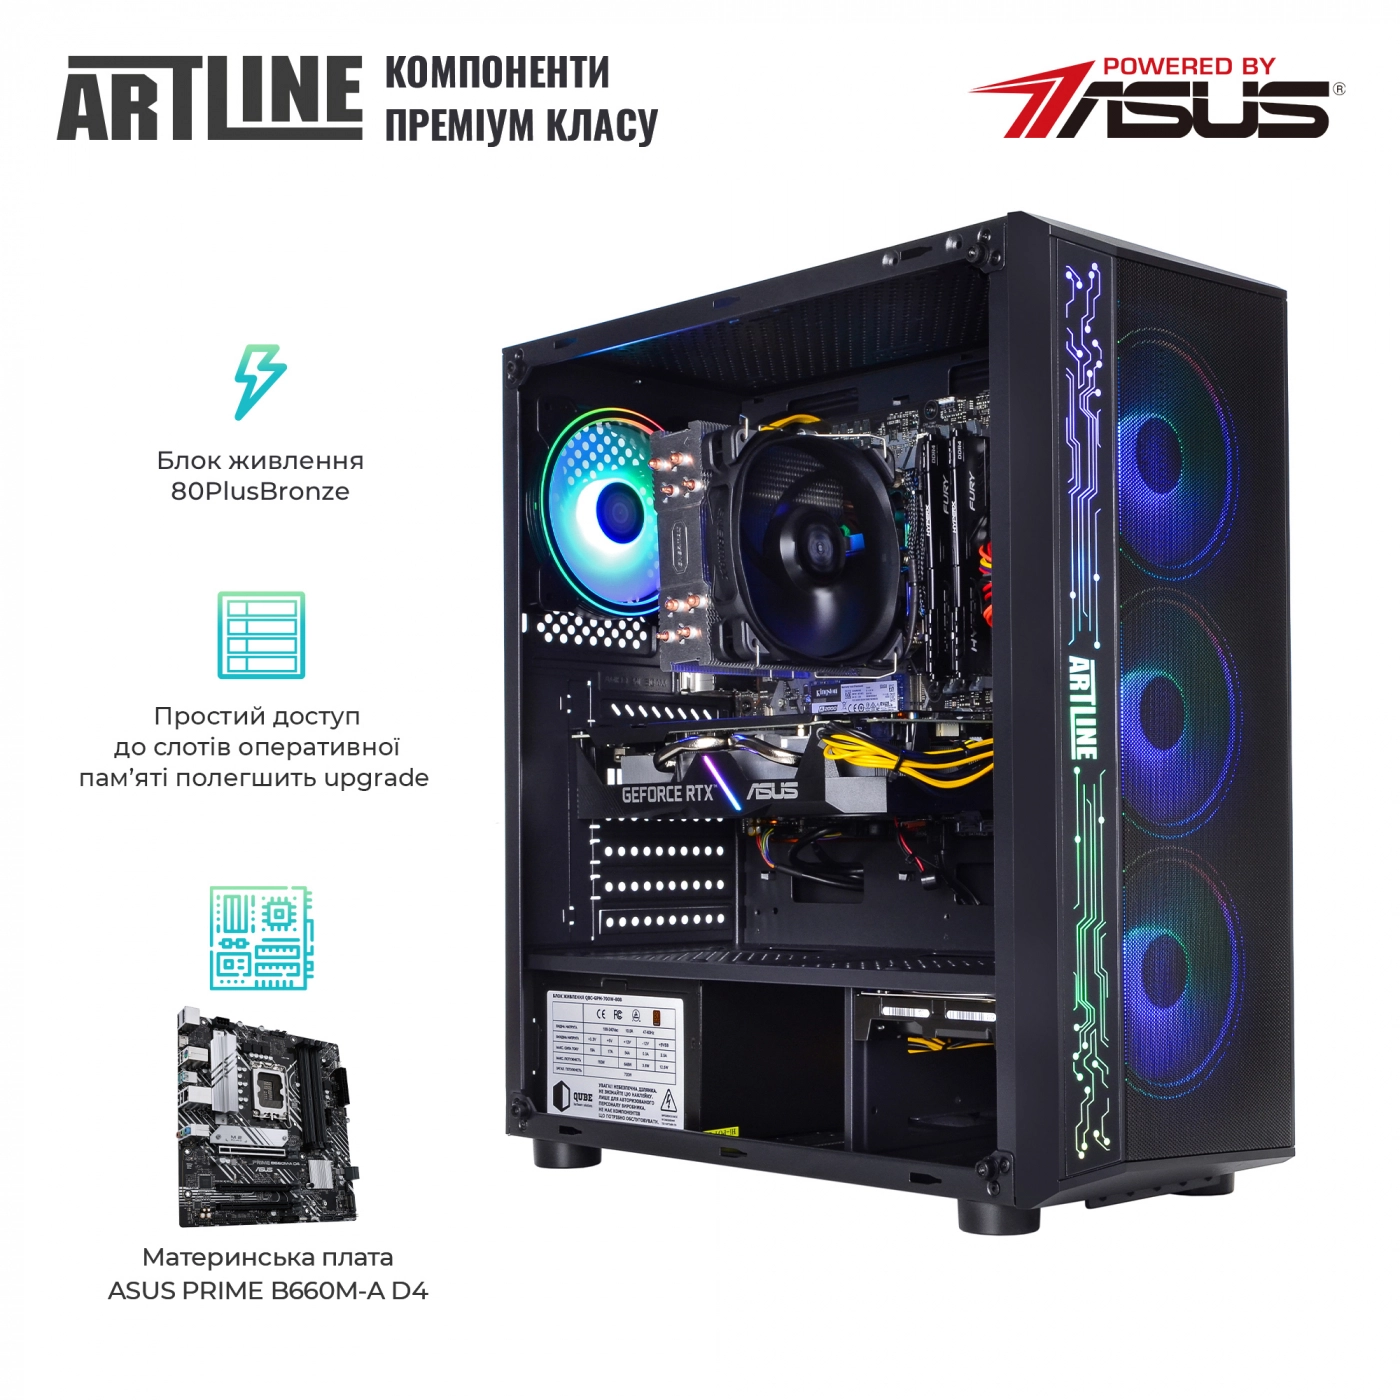 Купить Компьютер ARTLINE Gaming X57v45 - фото 3